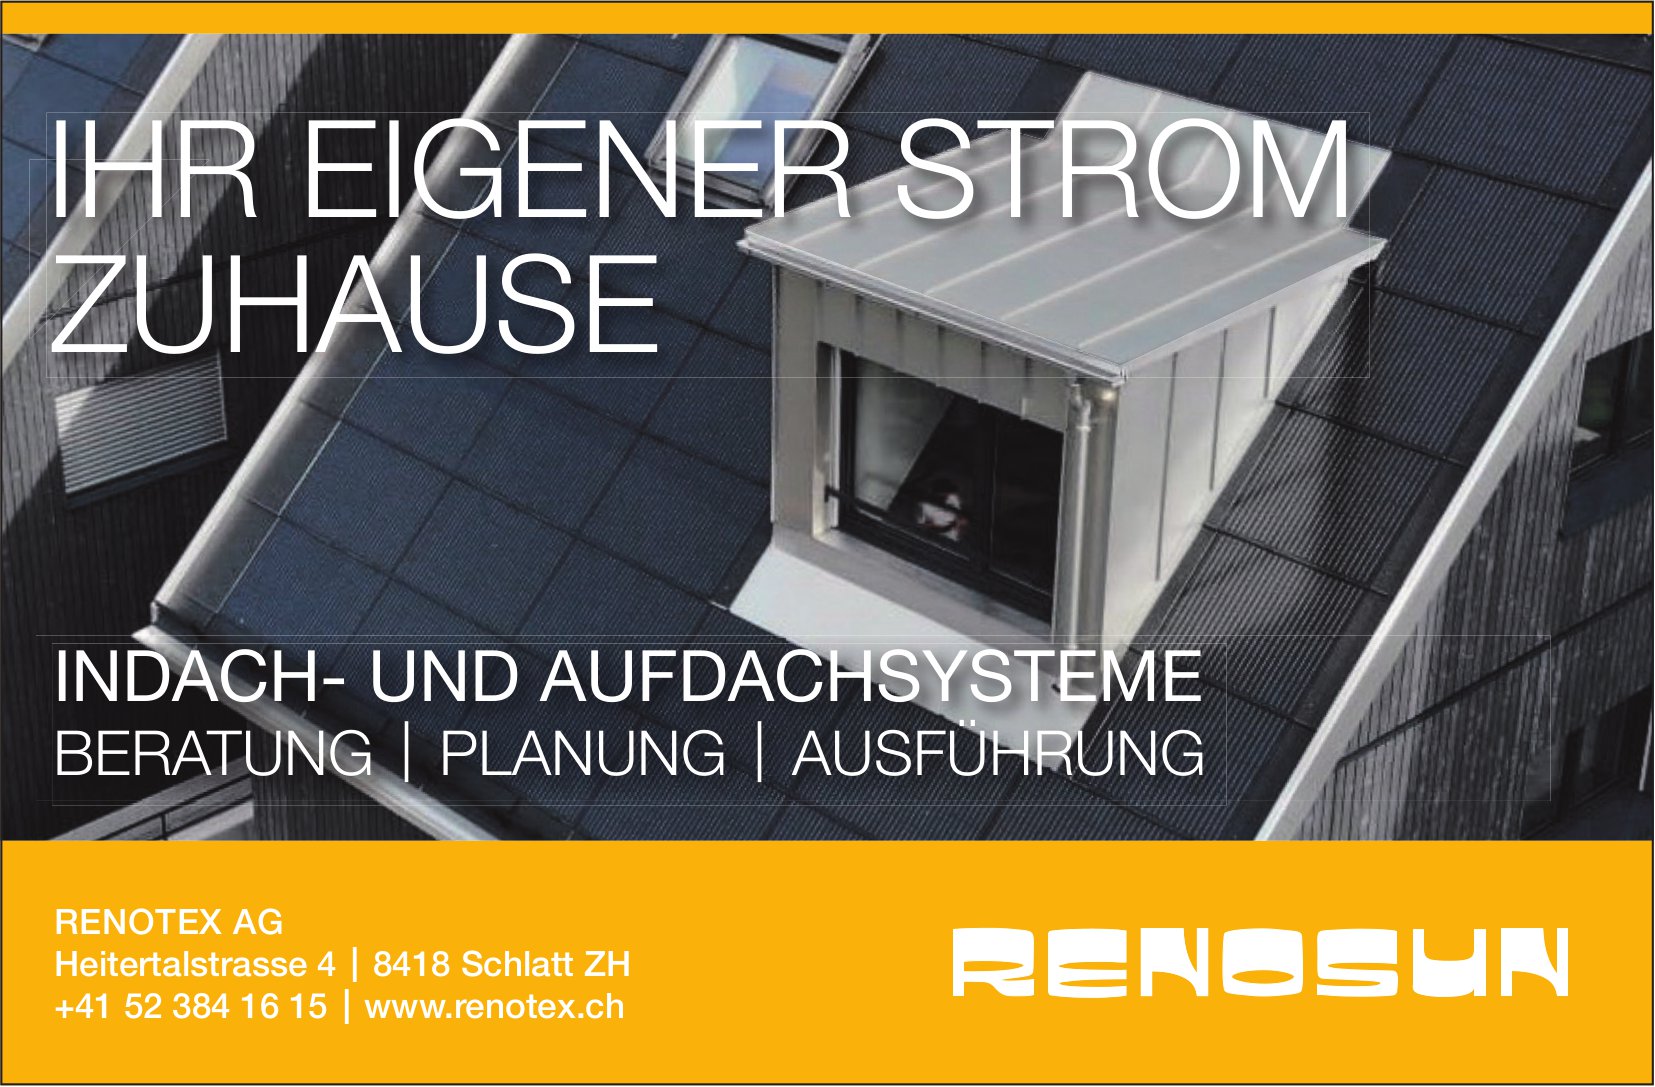 Renotex AG, Schlatt - Ihr eigener Strom zuhause